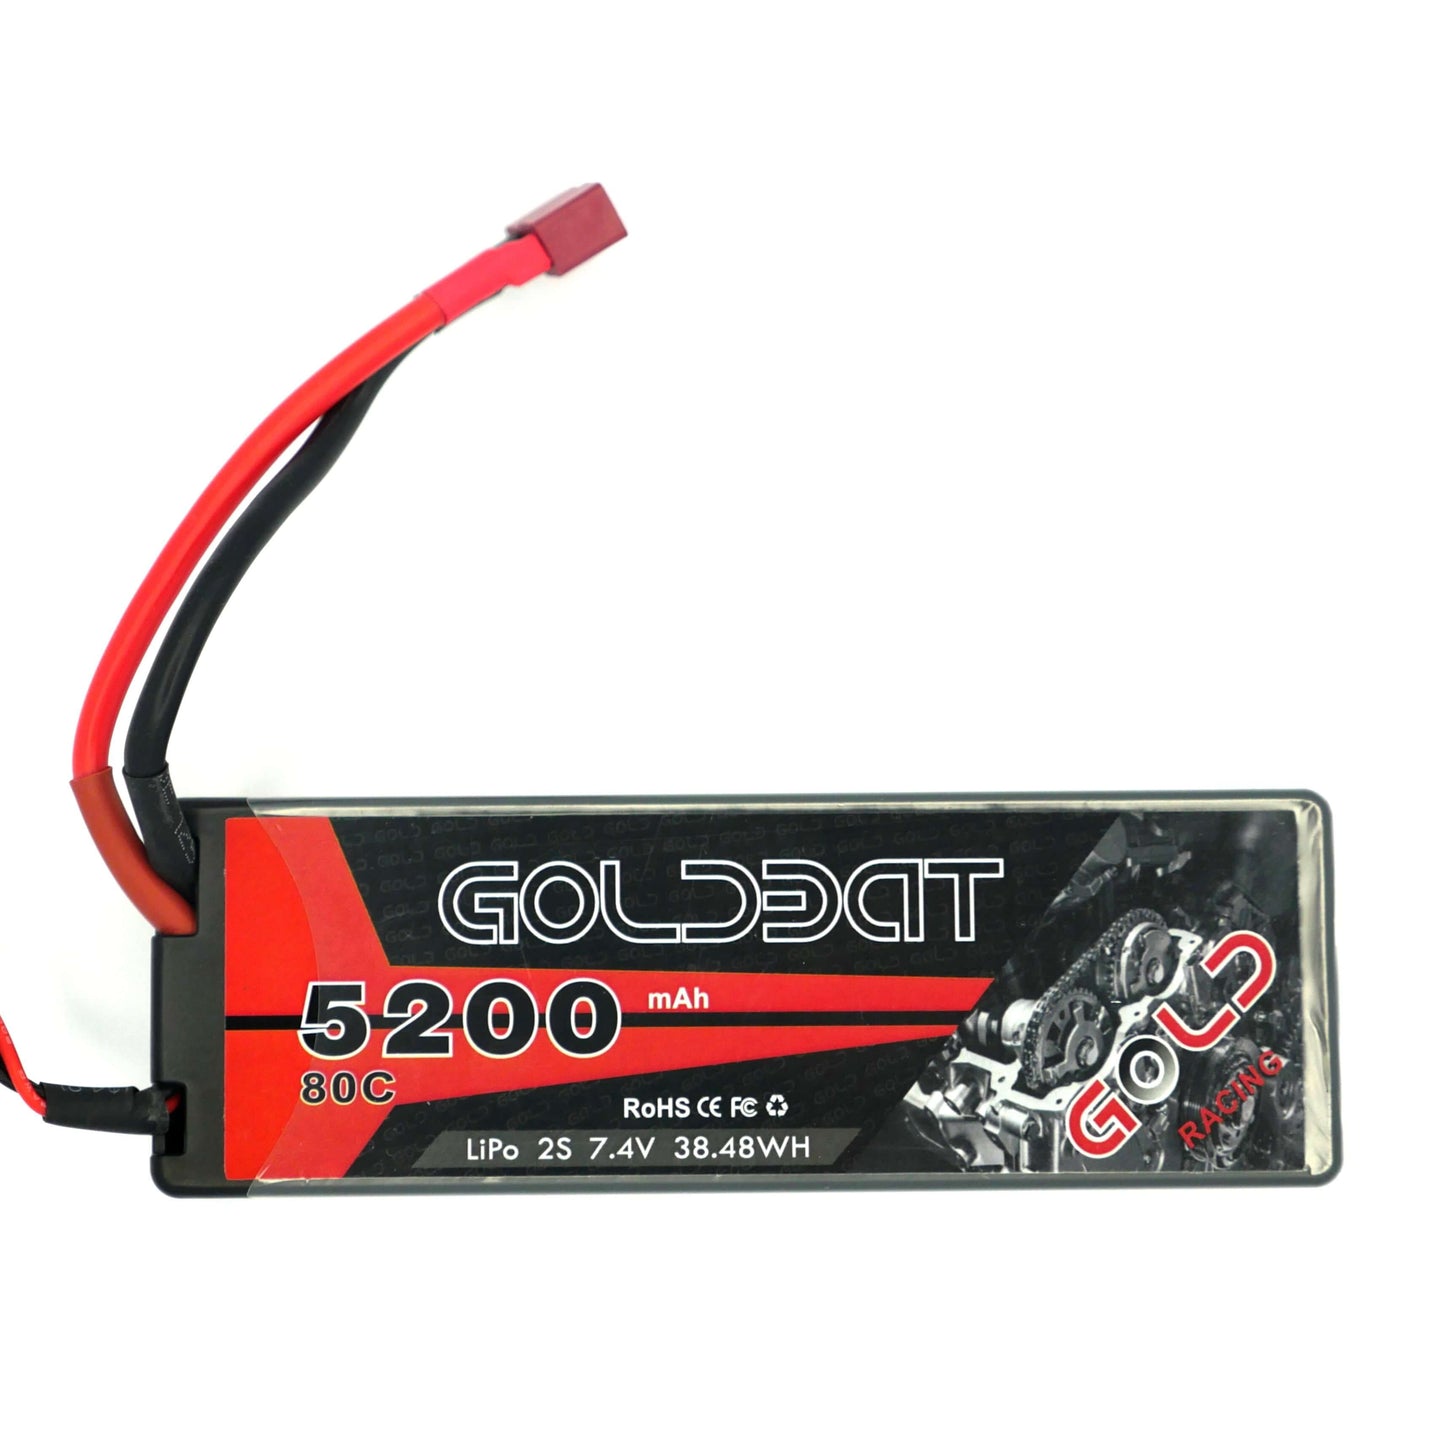 GoldBat 5200mAh 2S 7.4v 80C LiPo RC Battery